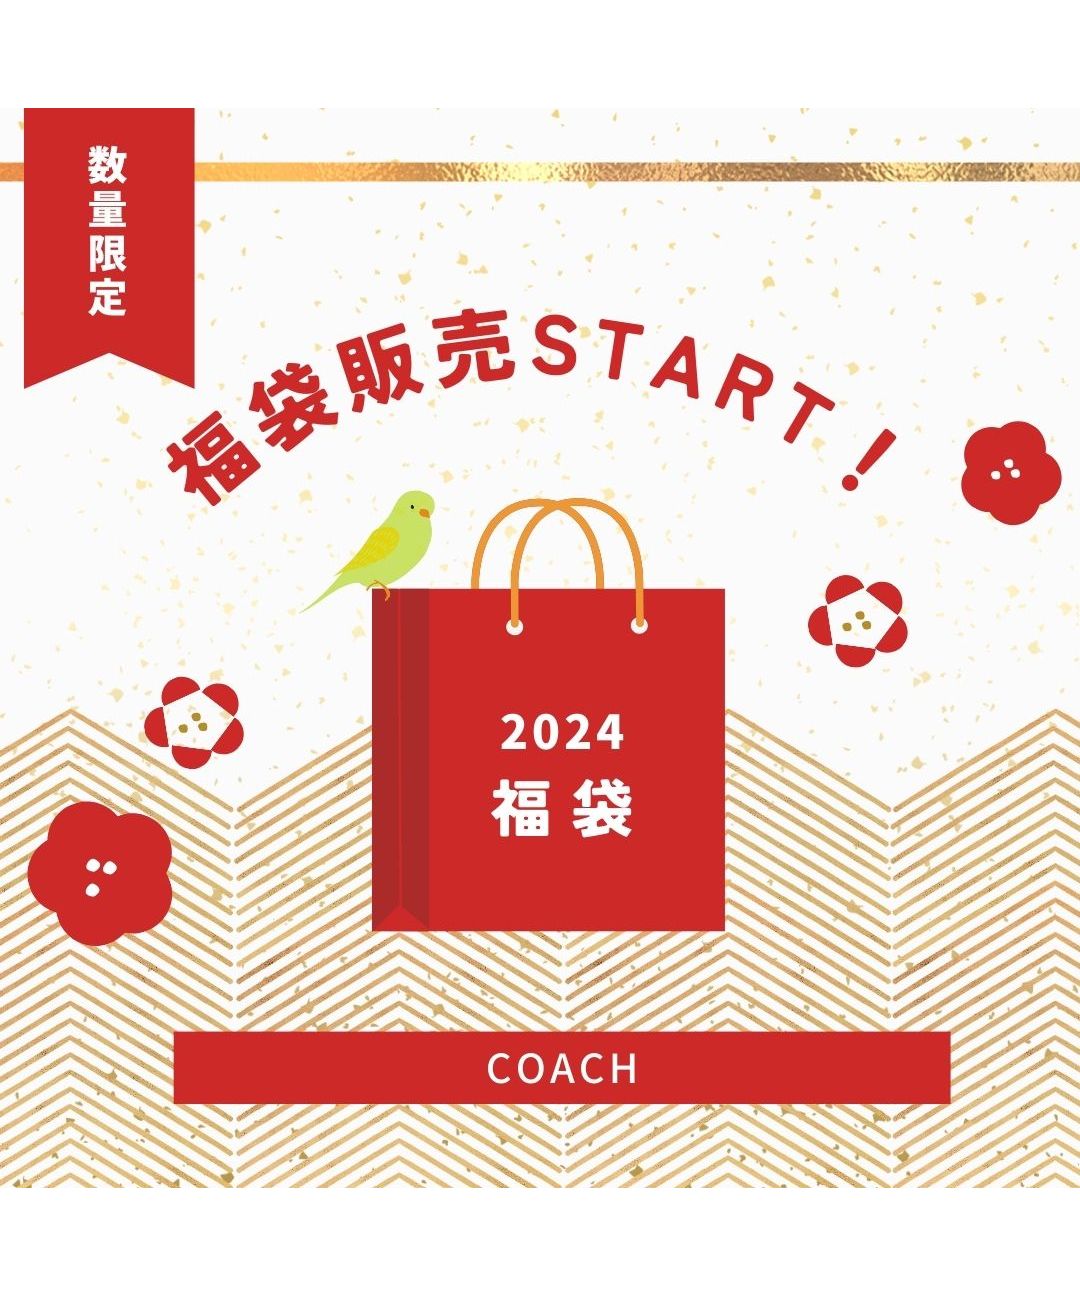 【数量限定セット商品】福袋 Coach コーチ レディースバッグ 財布 バッグ セット商品